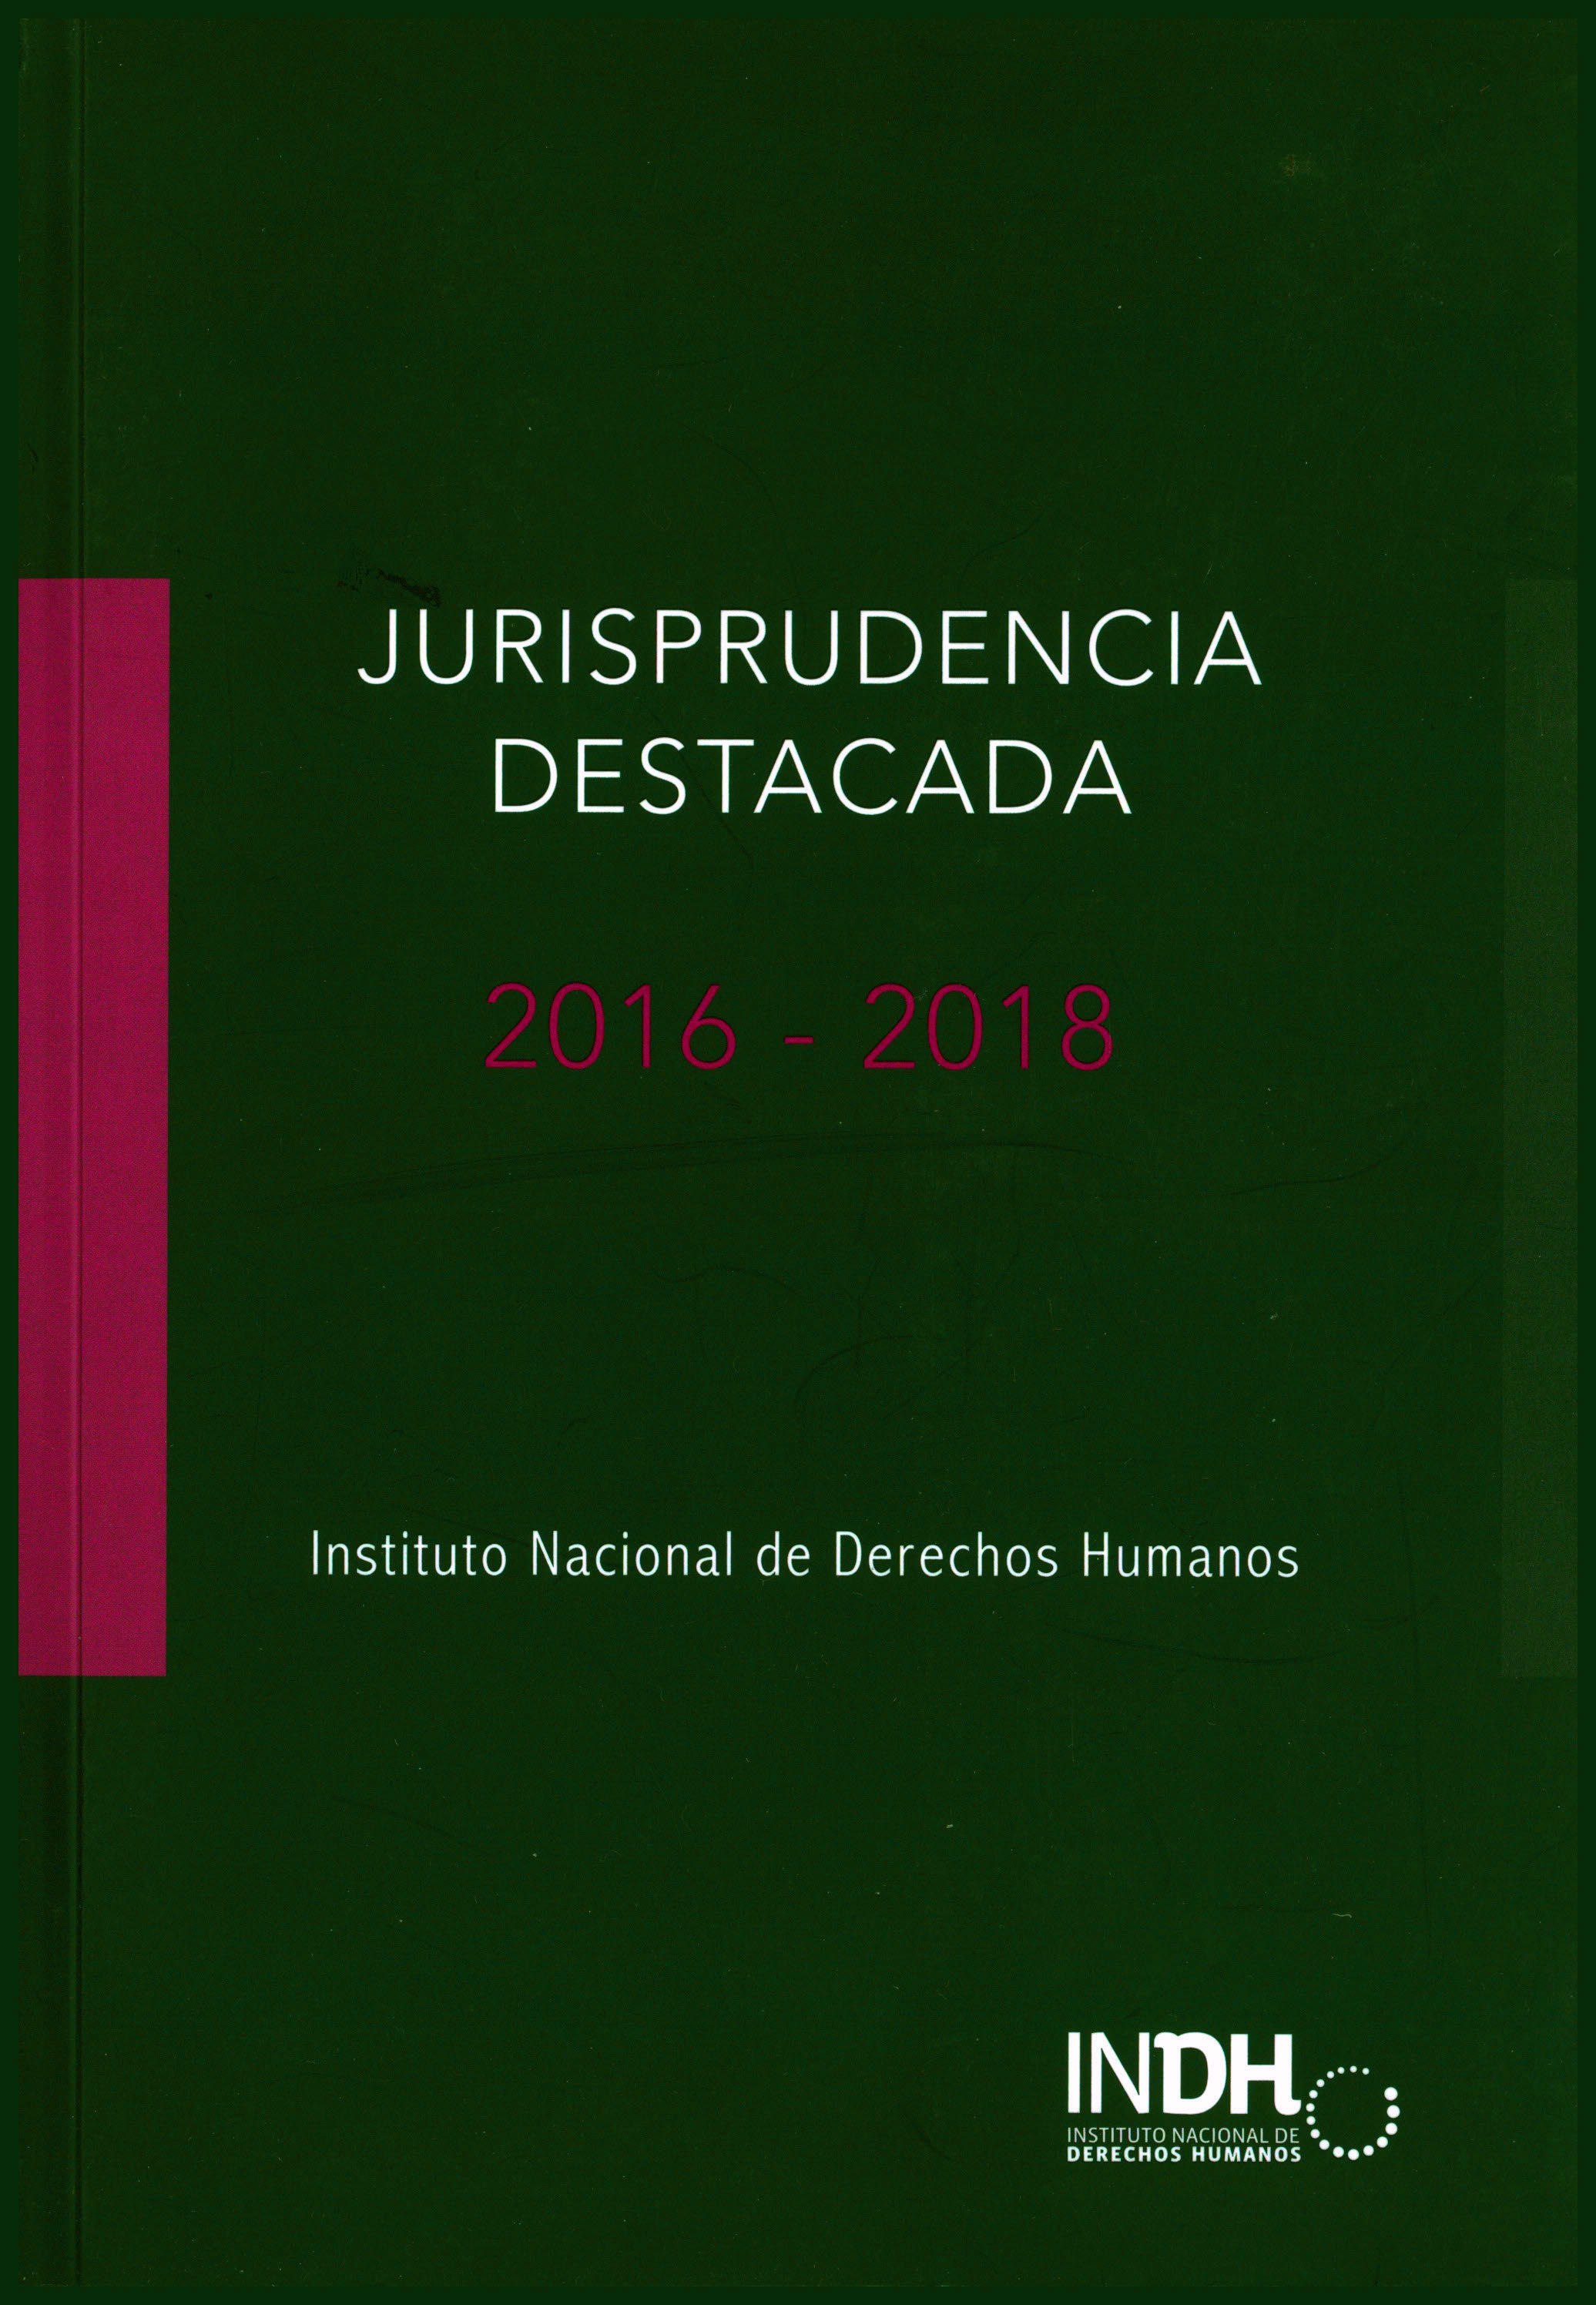 Jurisprudencia destacada. Instituto Nacional de Derechos Humamos 2016-2018